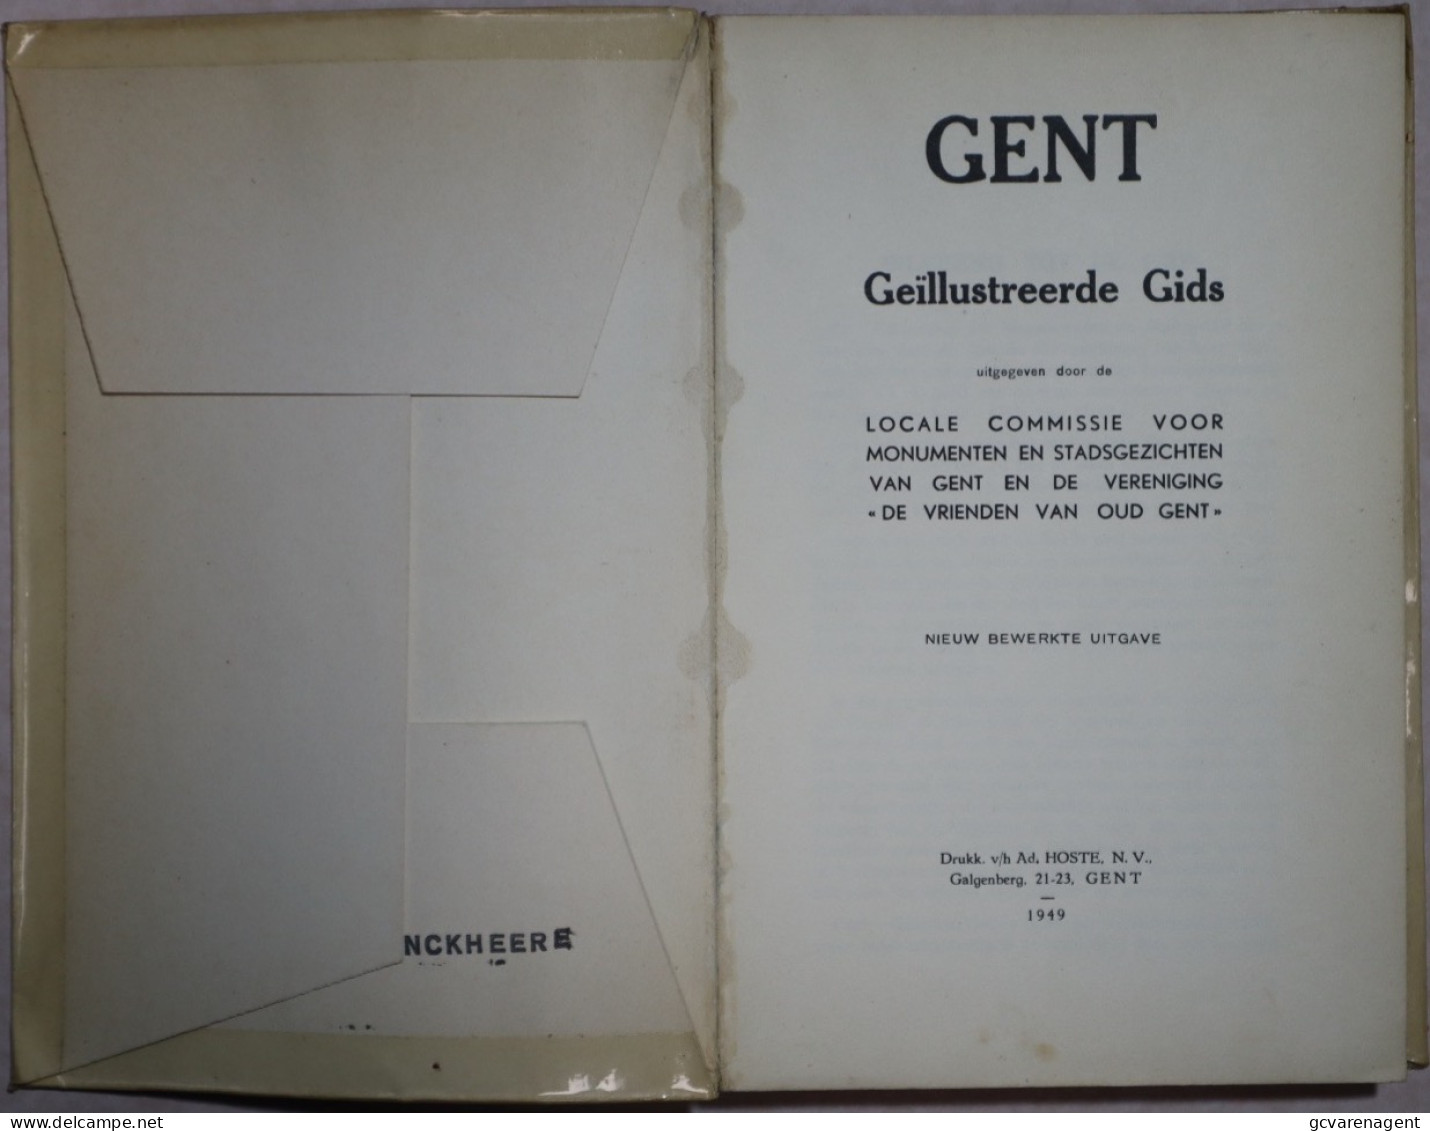 GENT 1949 GEÏLLUSTREEDE GIDS + BIJLAGE = 192 BLZ = 84 AFBEELDINGEN = GOEDE STAAT 220 X 115 MM. ZIE AFBEELDINGEN - Geschichte